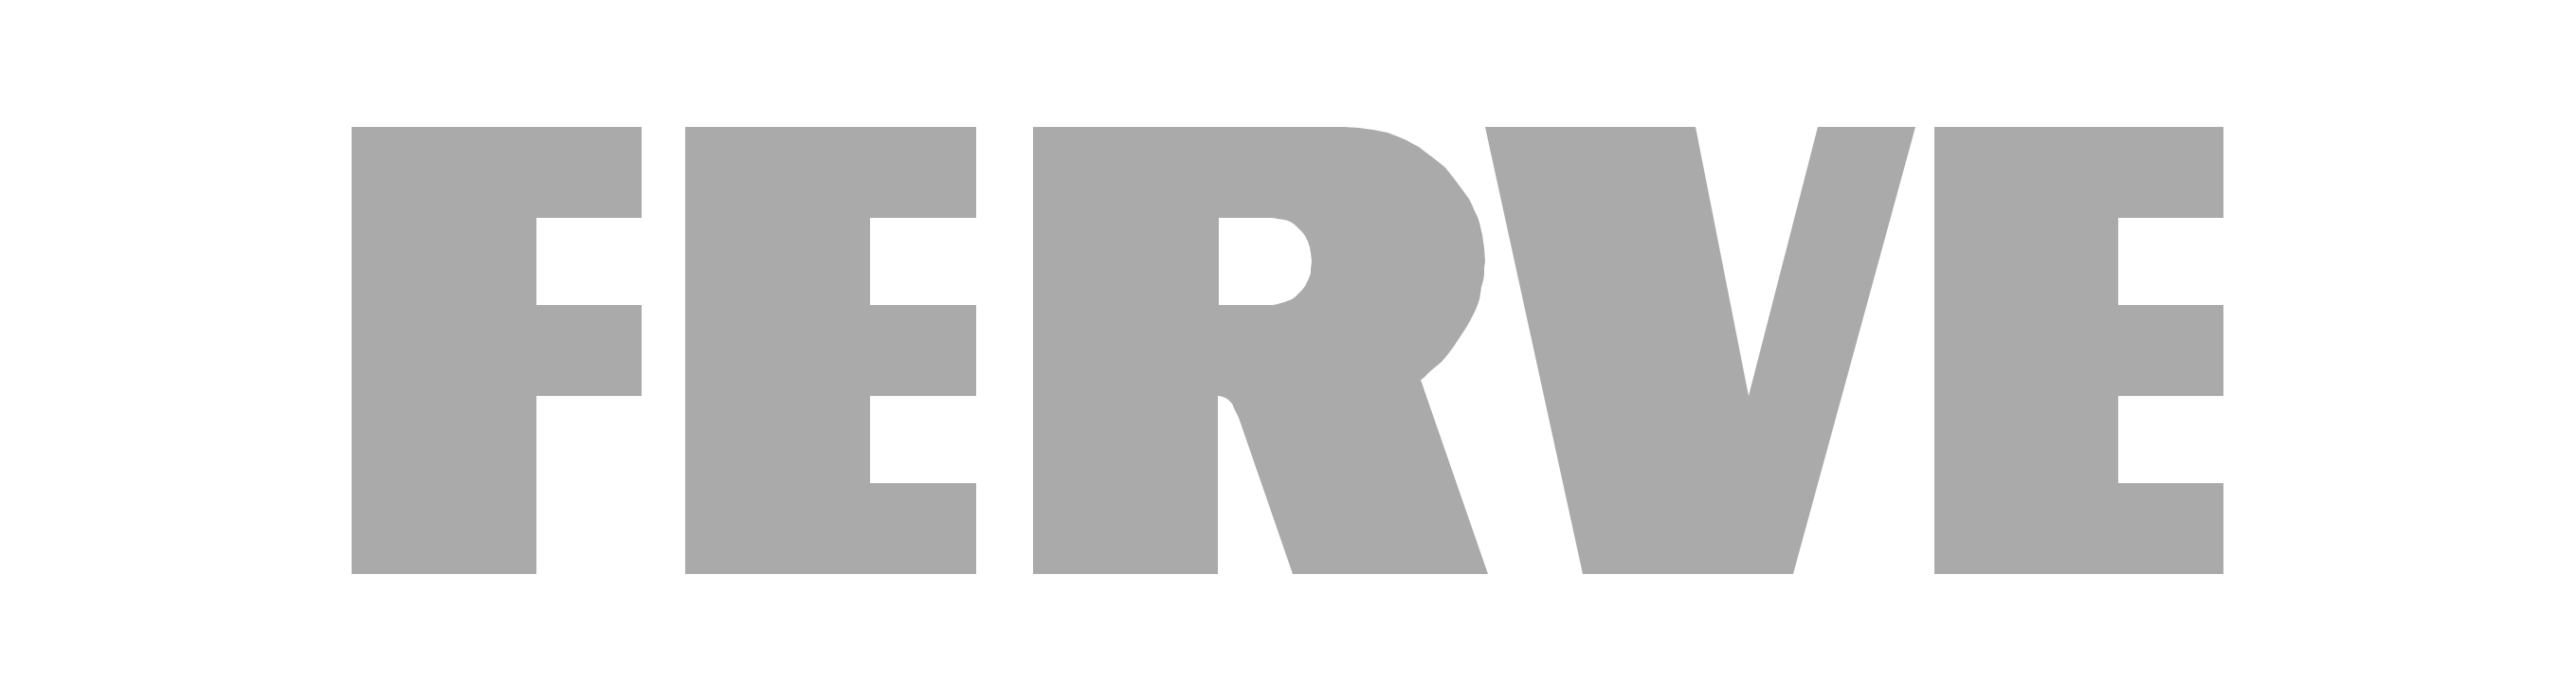 client-logo-05